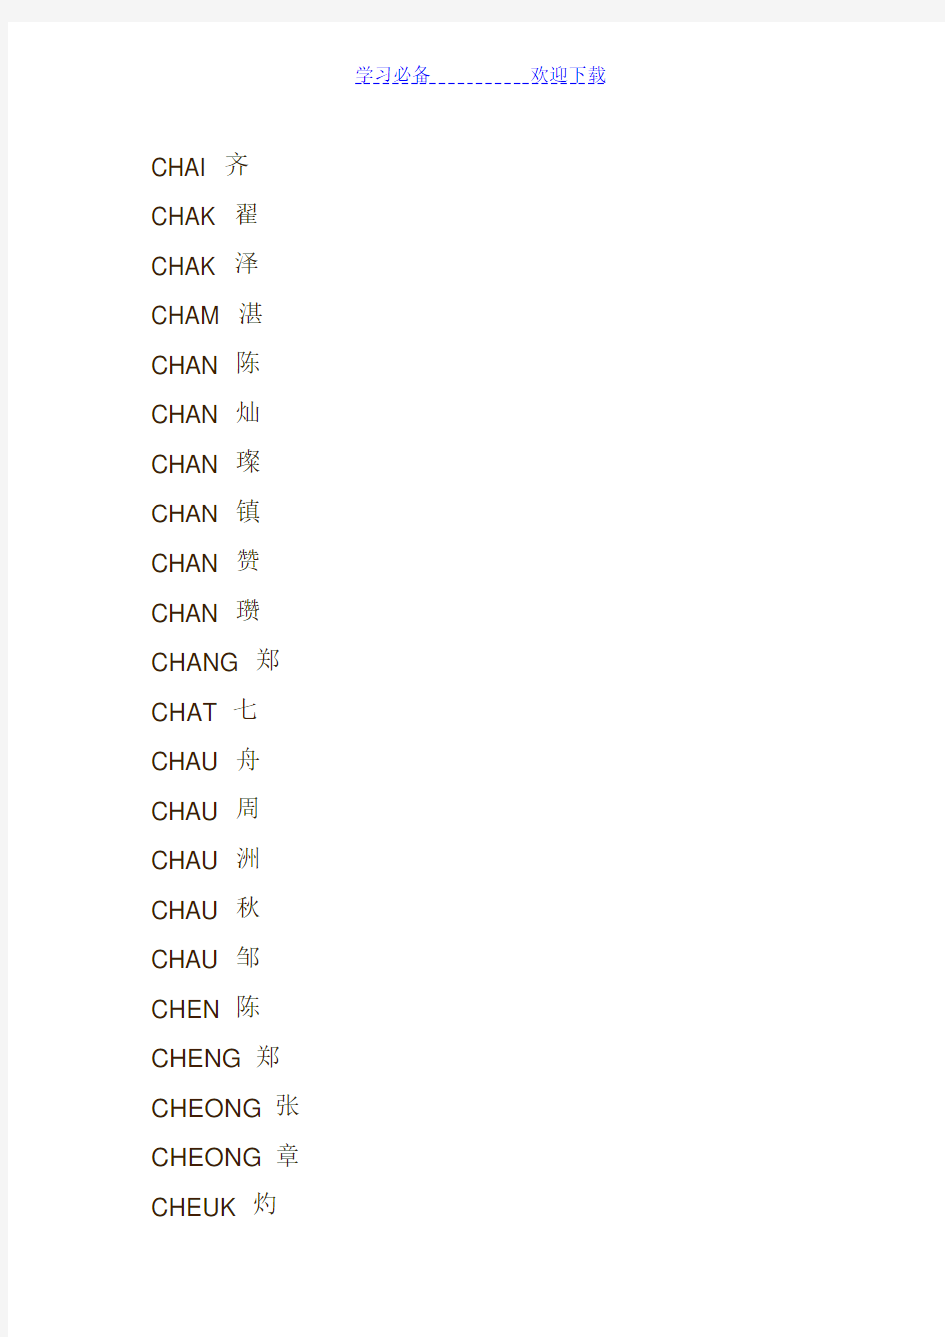 常用的华人人名的国际音标翻译(威妥玛式拼音法)对照表